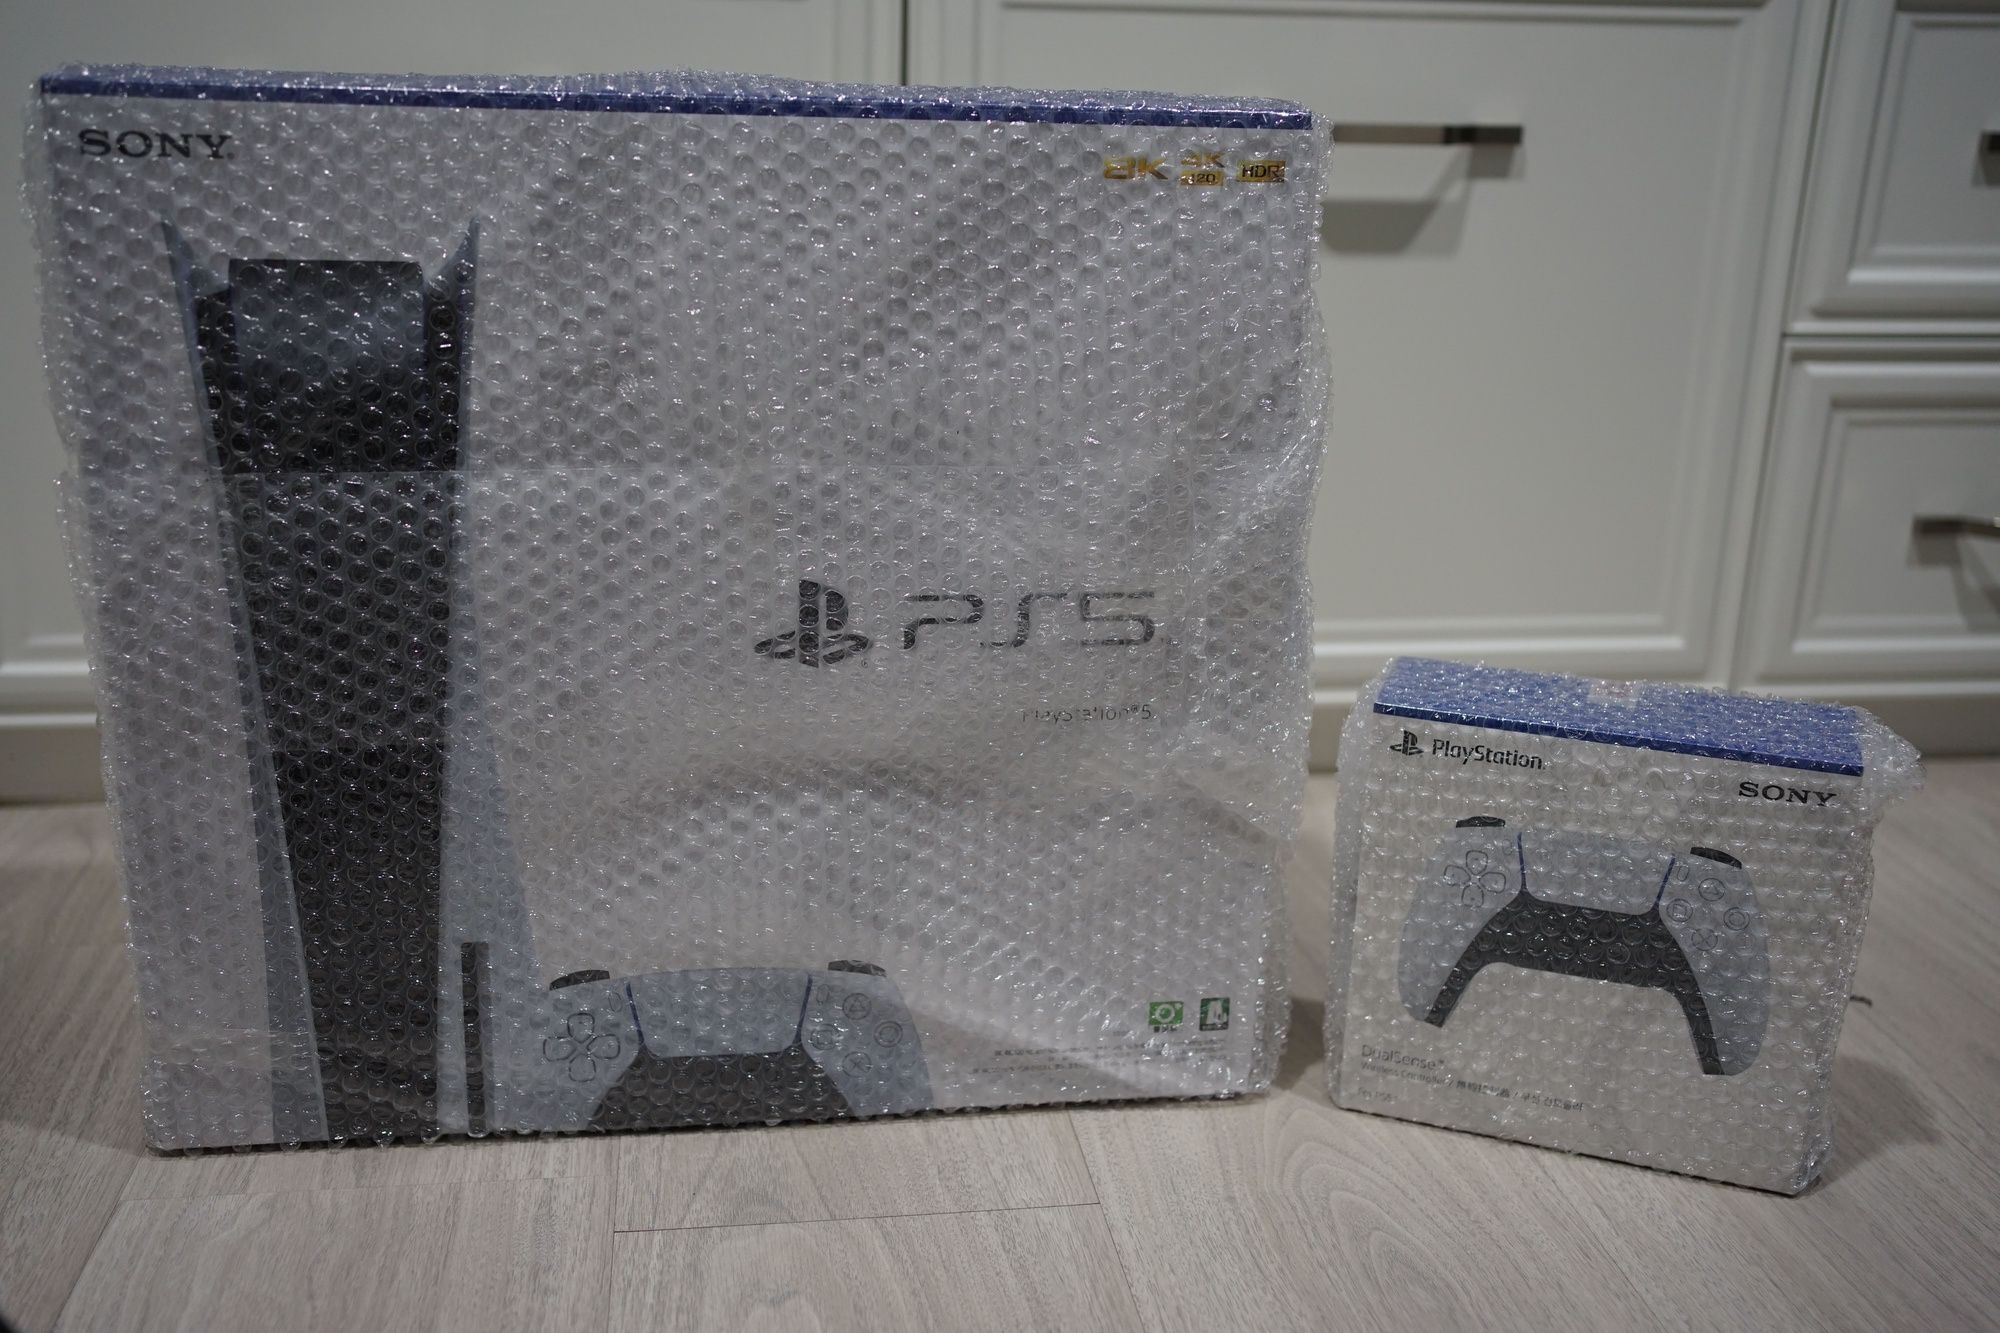 รีวิว Playstation 5 (PS5) และ Sony X90H